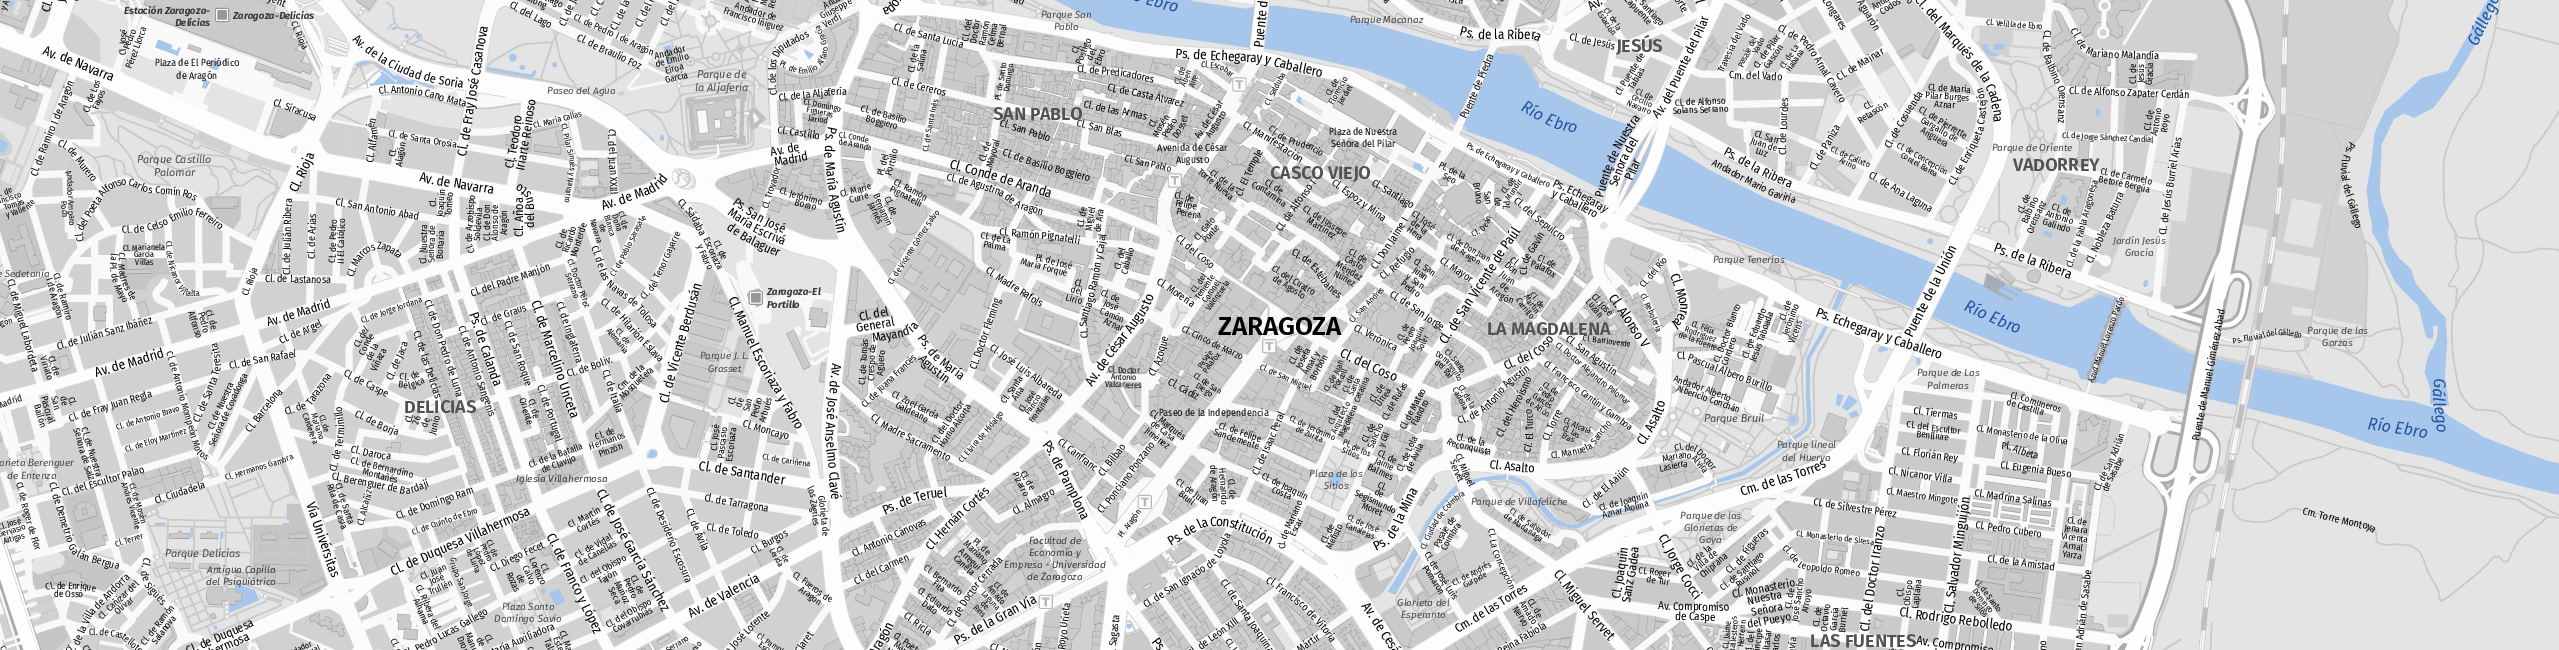 Stadtplan Zaragoza zum Downloaden.